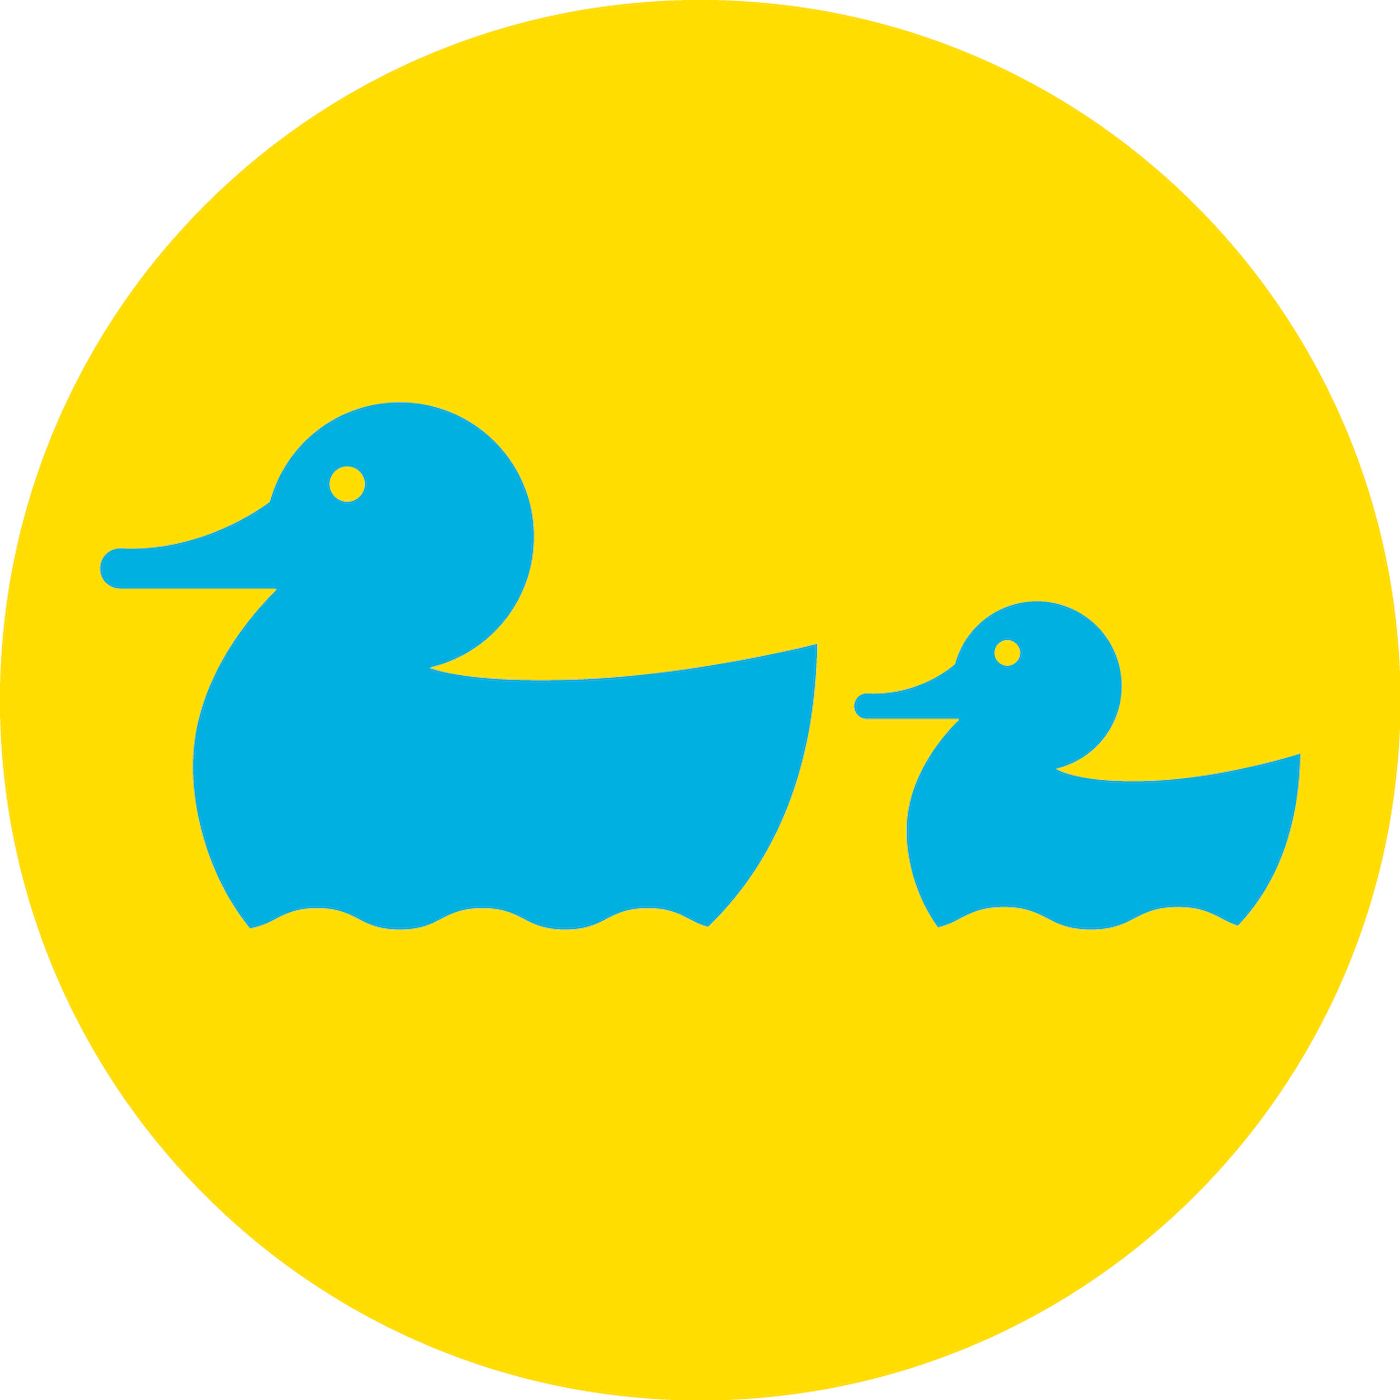 Infant Aquatics's logo